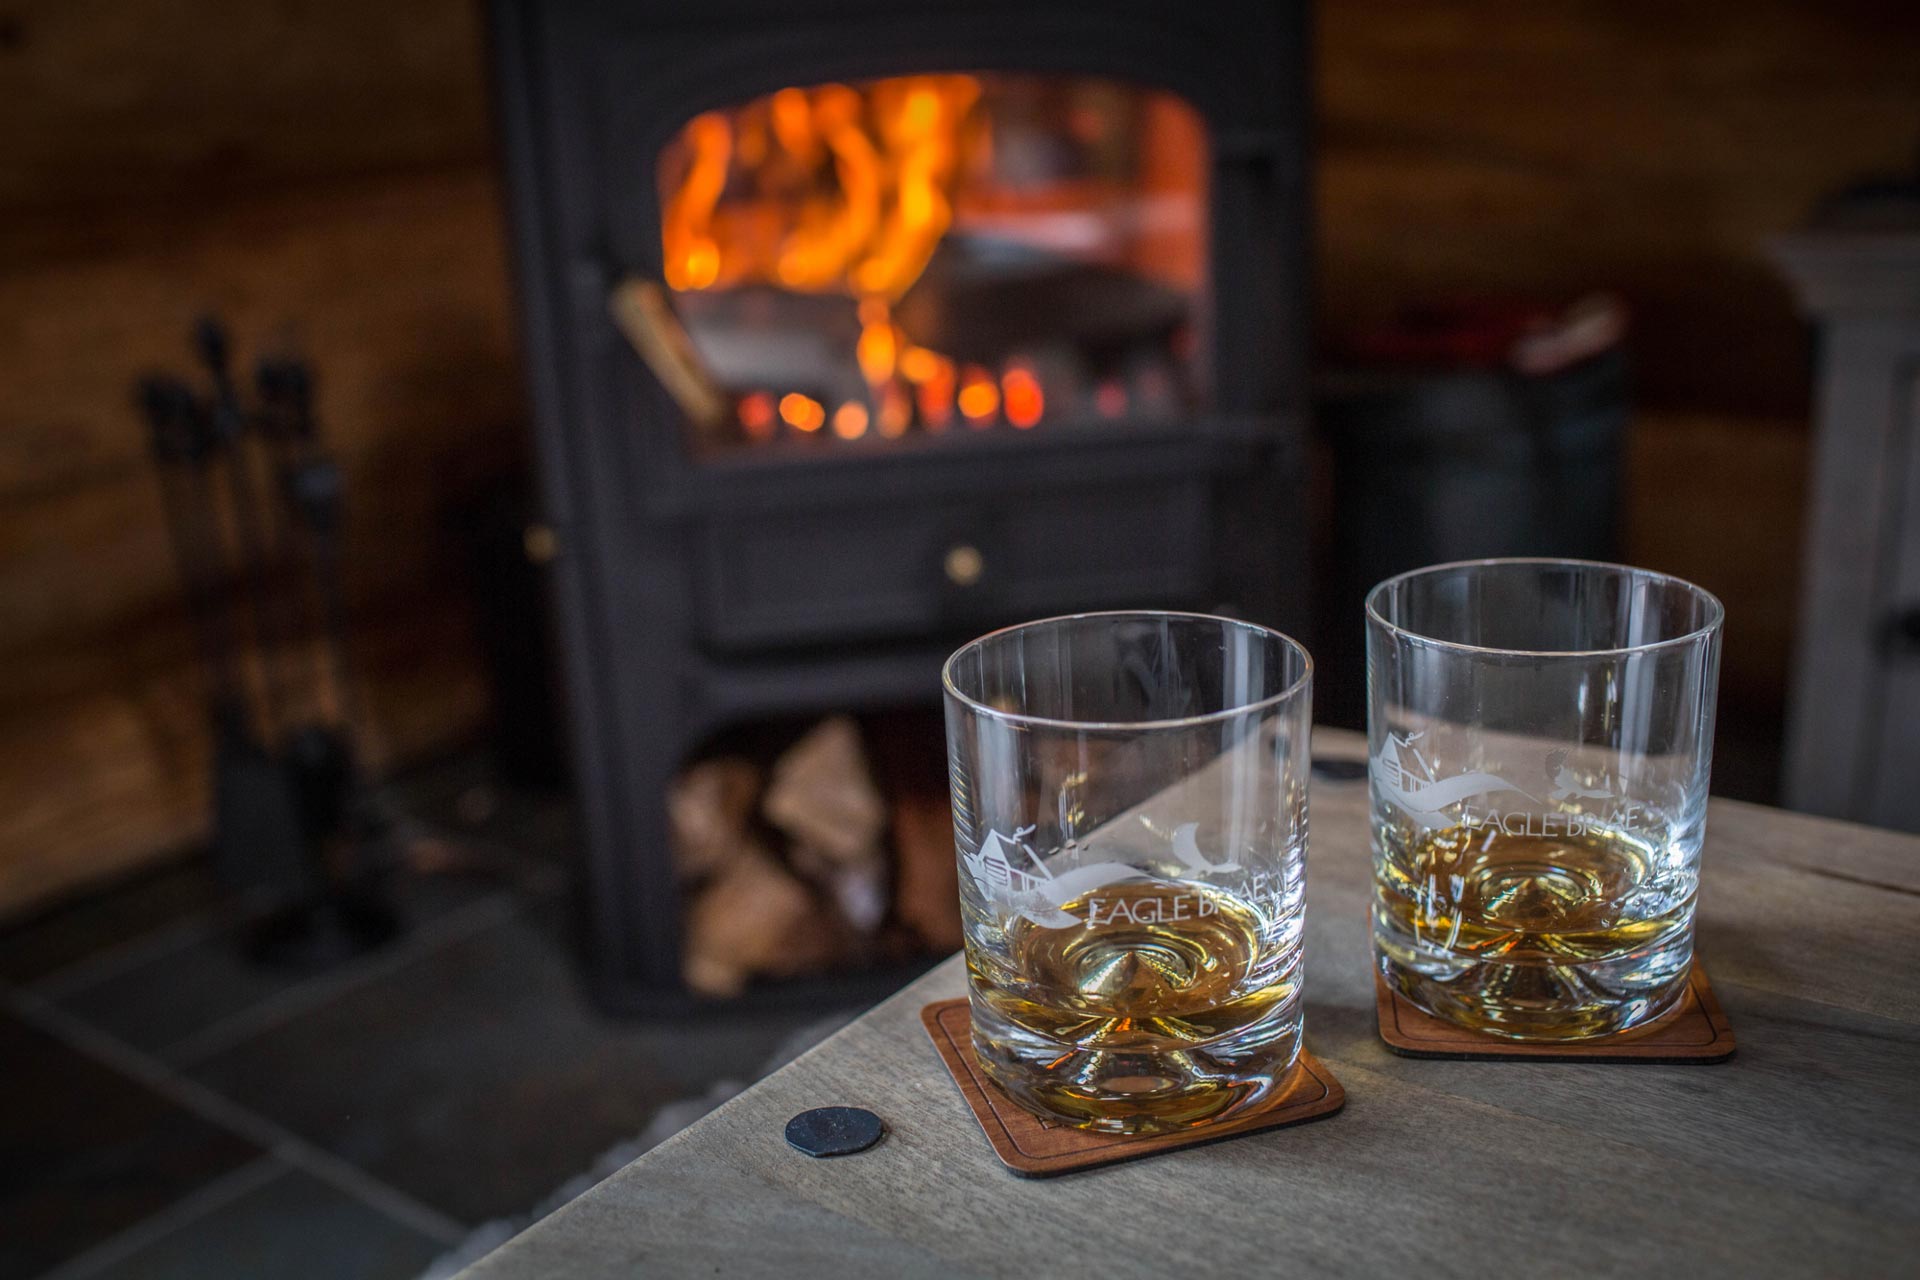 Whisky glasses in front of a log burner